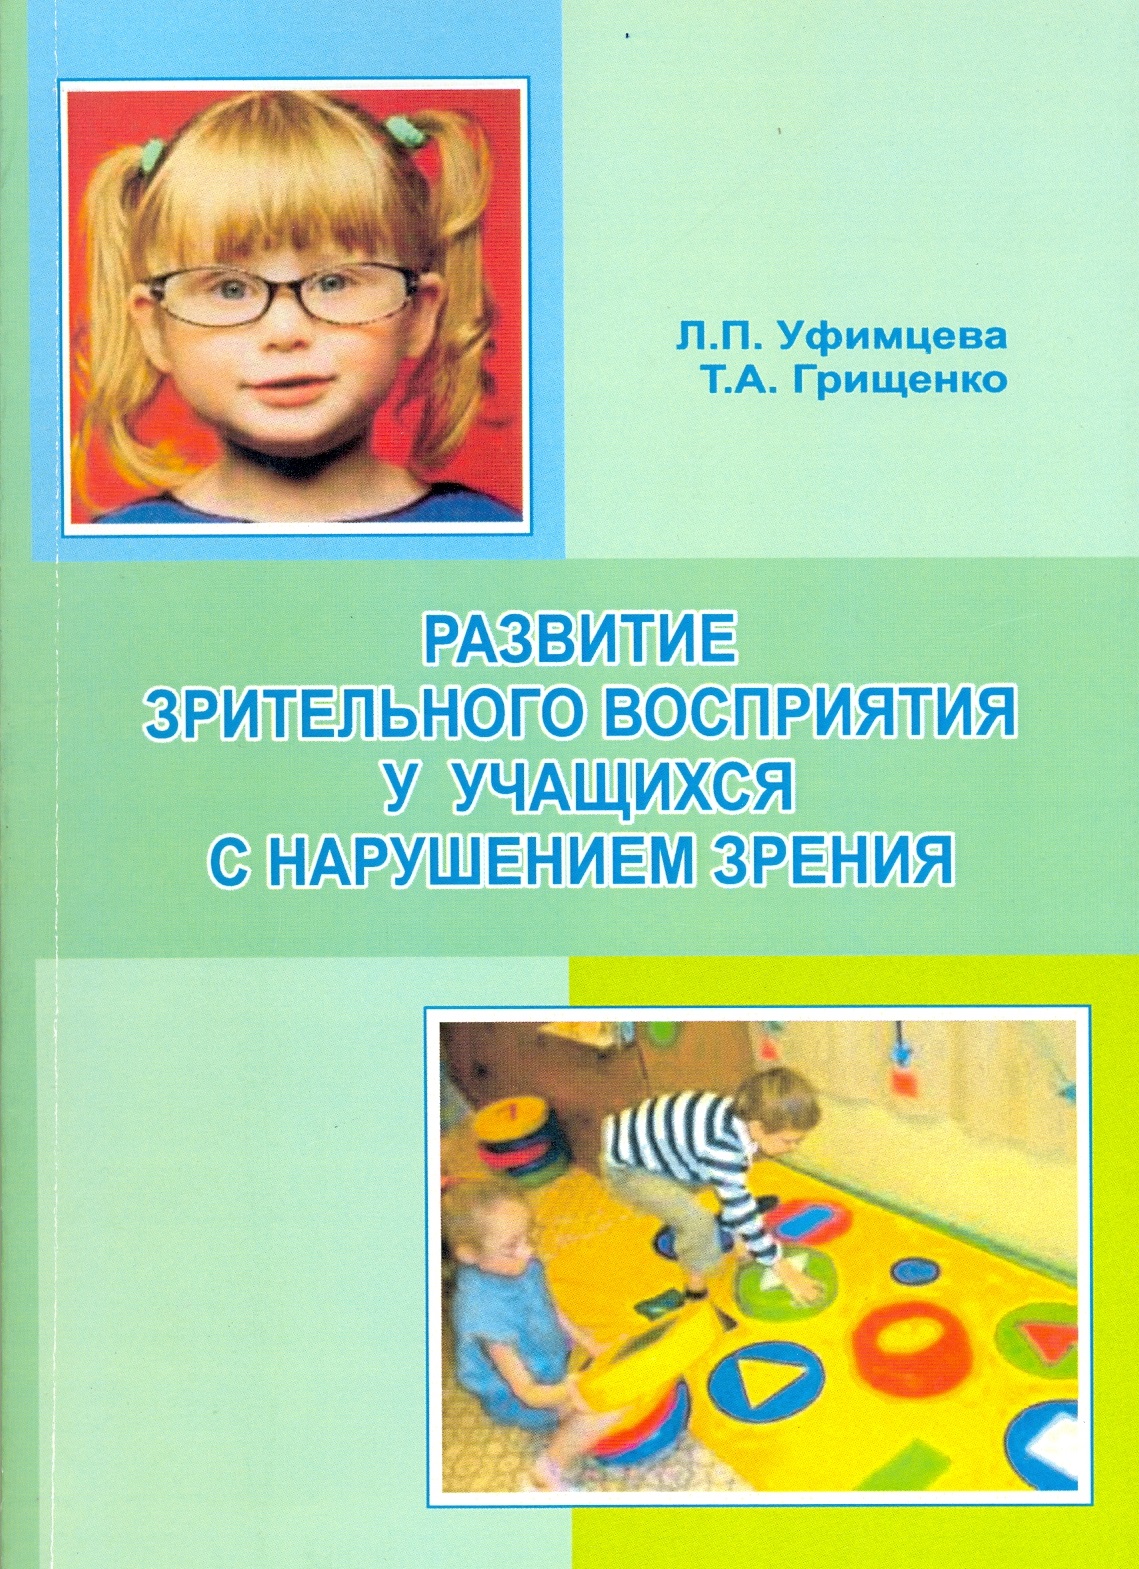 Воспитание и обучение детей с нарушением зрения. Пособия для детей с нарушением зрения. Учебники для детей с нарушением зрения. Зрительное восприятие у детей с нарушением зрения. Книги для детей с нарушением зрения дошкольников.